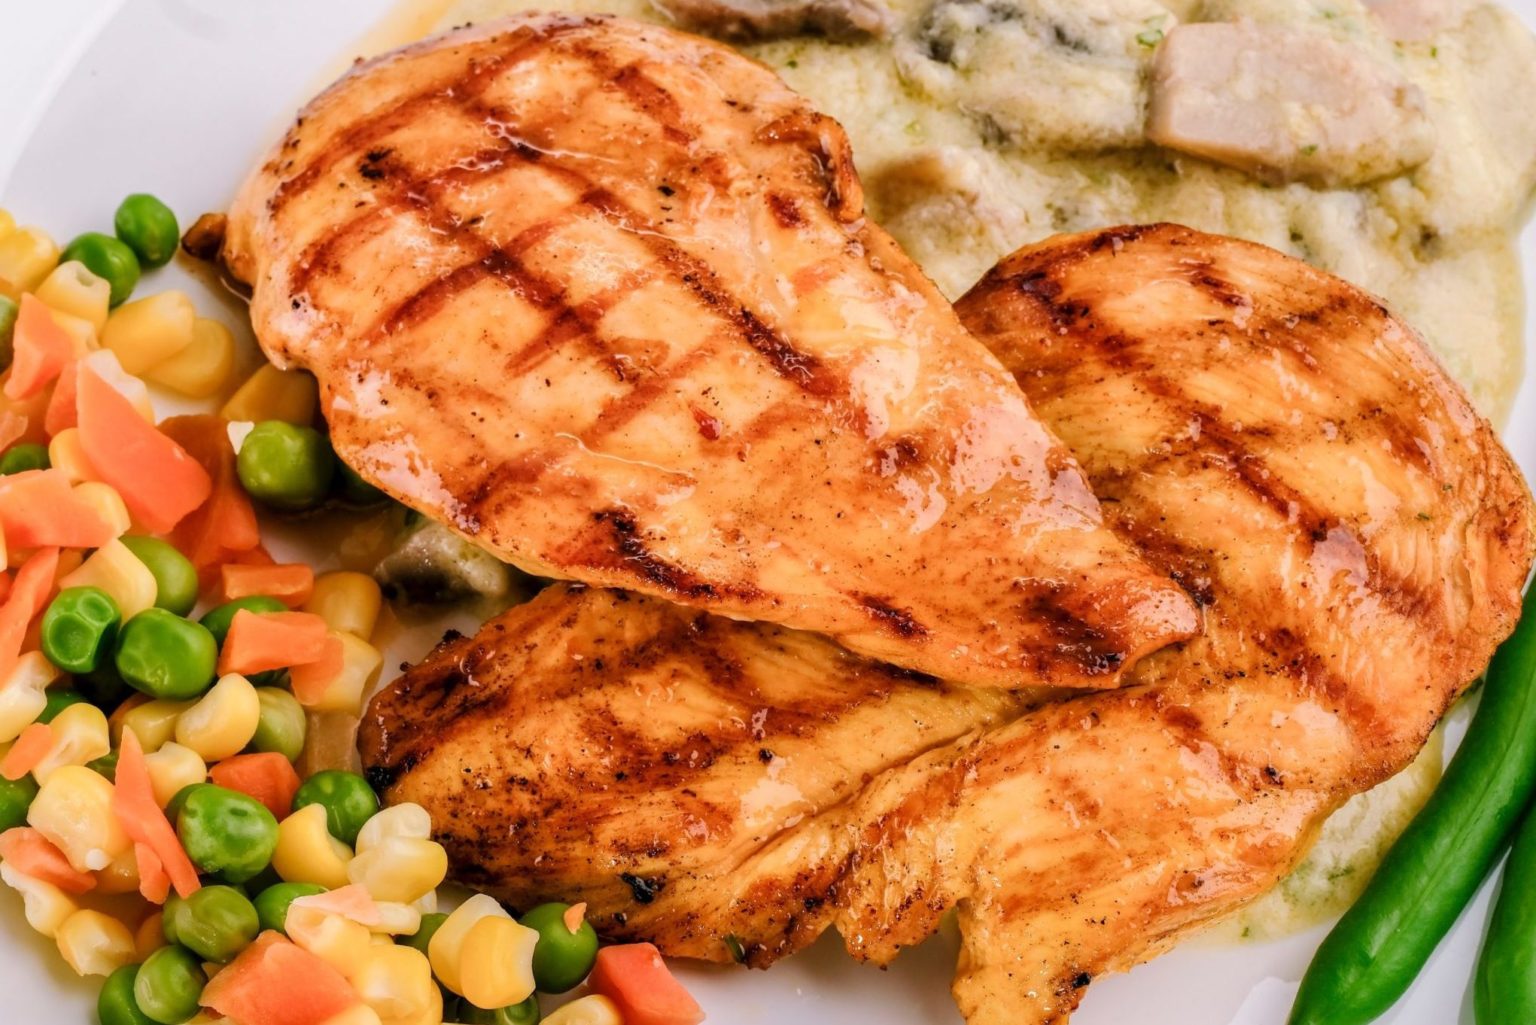 Is White or Dark Meat Chicken Healthier? - yourdailysportfix.com